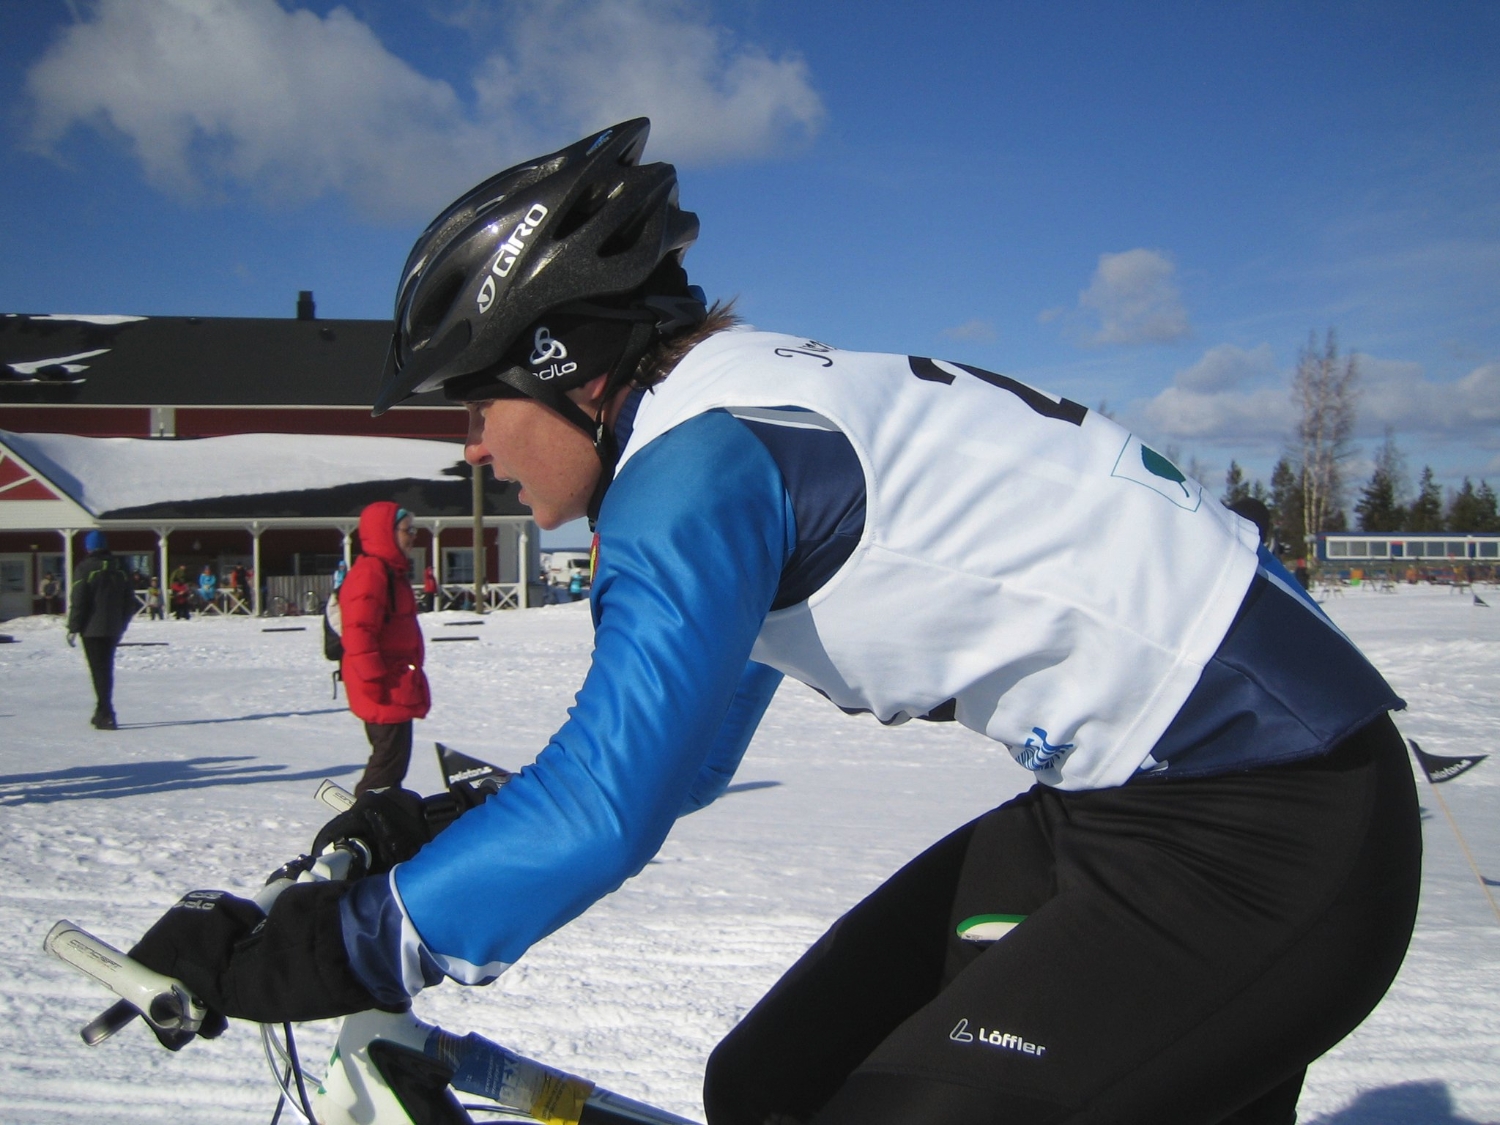 Talvitriahtlonin maailmanmestaruuksista kisattiin 26.3. Jämijärvellä. Mari Marttinen voitti N40-luokan. Ikäsarjojen kisamatkat olivat 3km juoksu - 8km maastopyöräily ja 6km hiihto. Pyöräilyosuus oli kisan haastavin, sillä reittiin kuului paljon pehmeää latupohjaa. Mari ratkaisi kilpailun edukseen ohittamalla hiihto-osuudella hopealle sijoittuneen italialaisen Stefania Valsecchin.